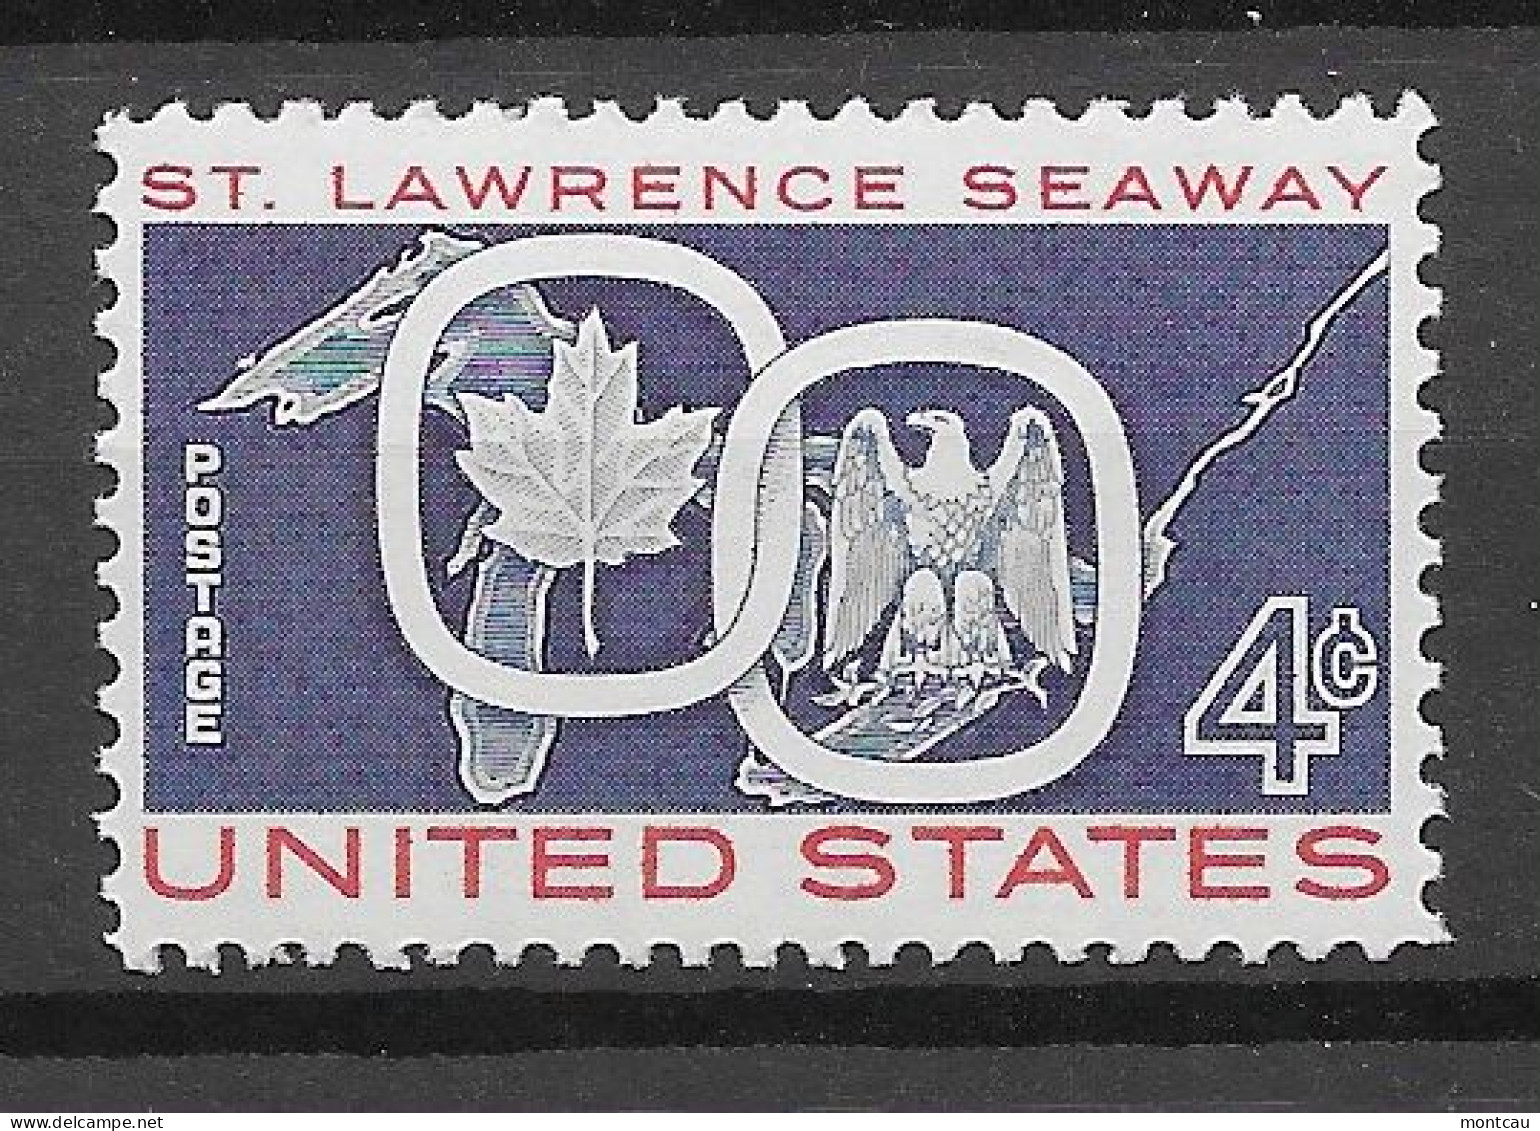 USA 1959.  St. Lawrence Sc 1131  (**) - Nuovi